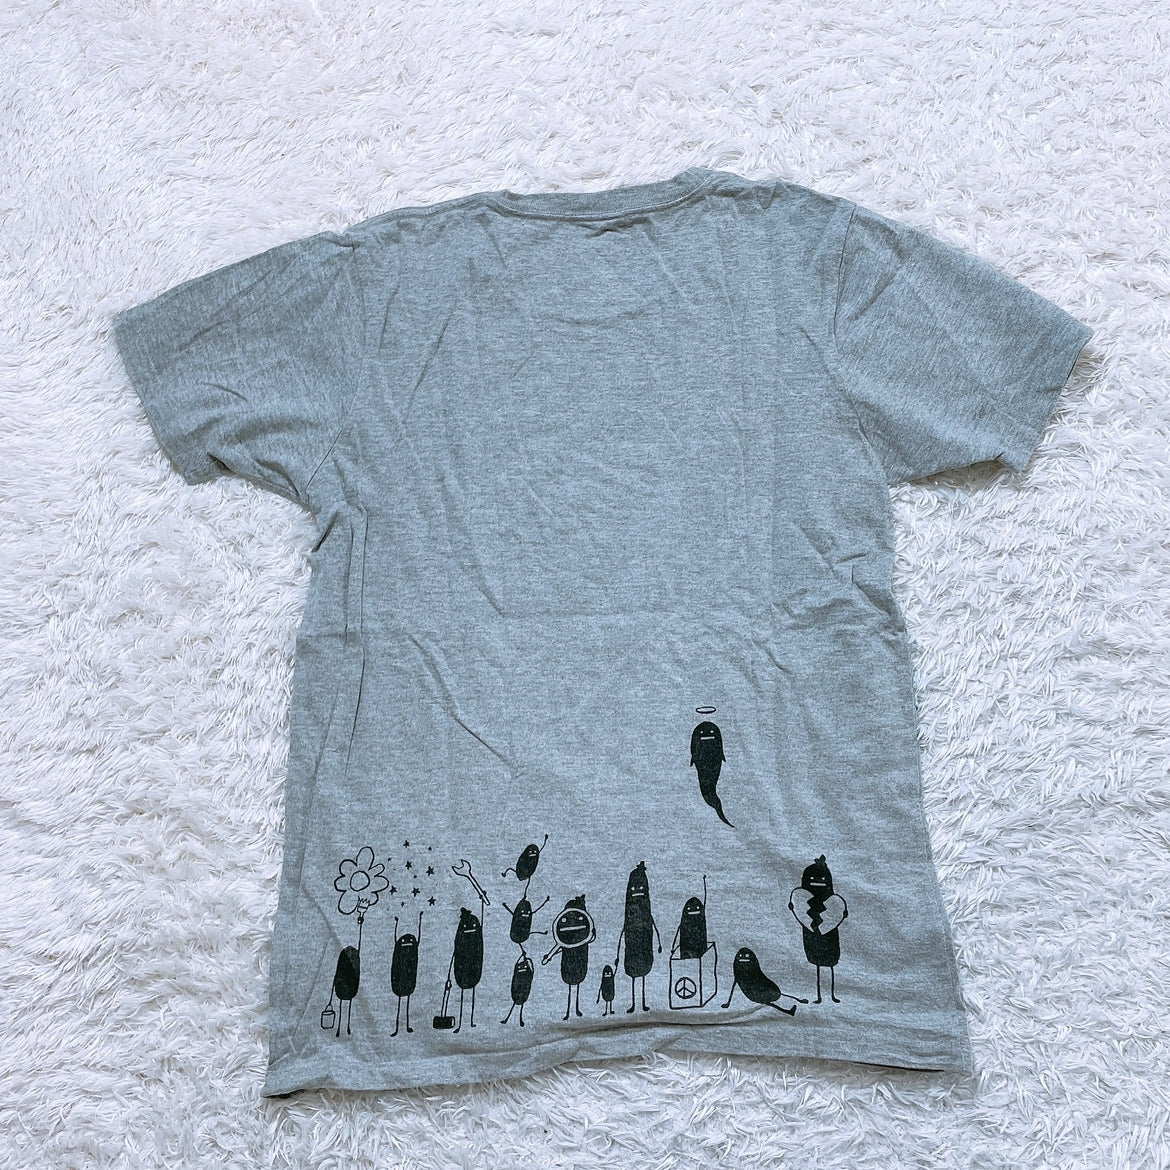 メンズS Design Tshirts Store graniph 半袖 Tシャツ グレー 灰色 黒 ブラック ナス デザインティーシャツストアグラニフ 【22221】